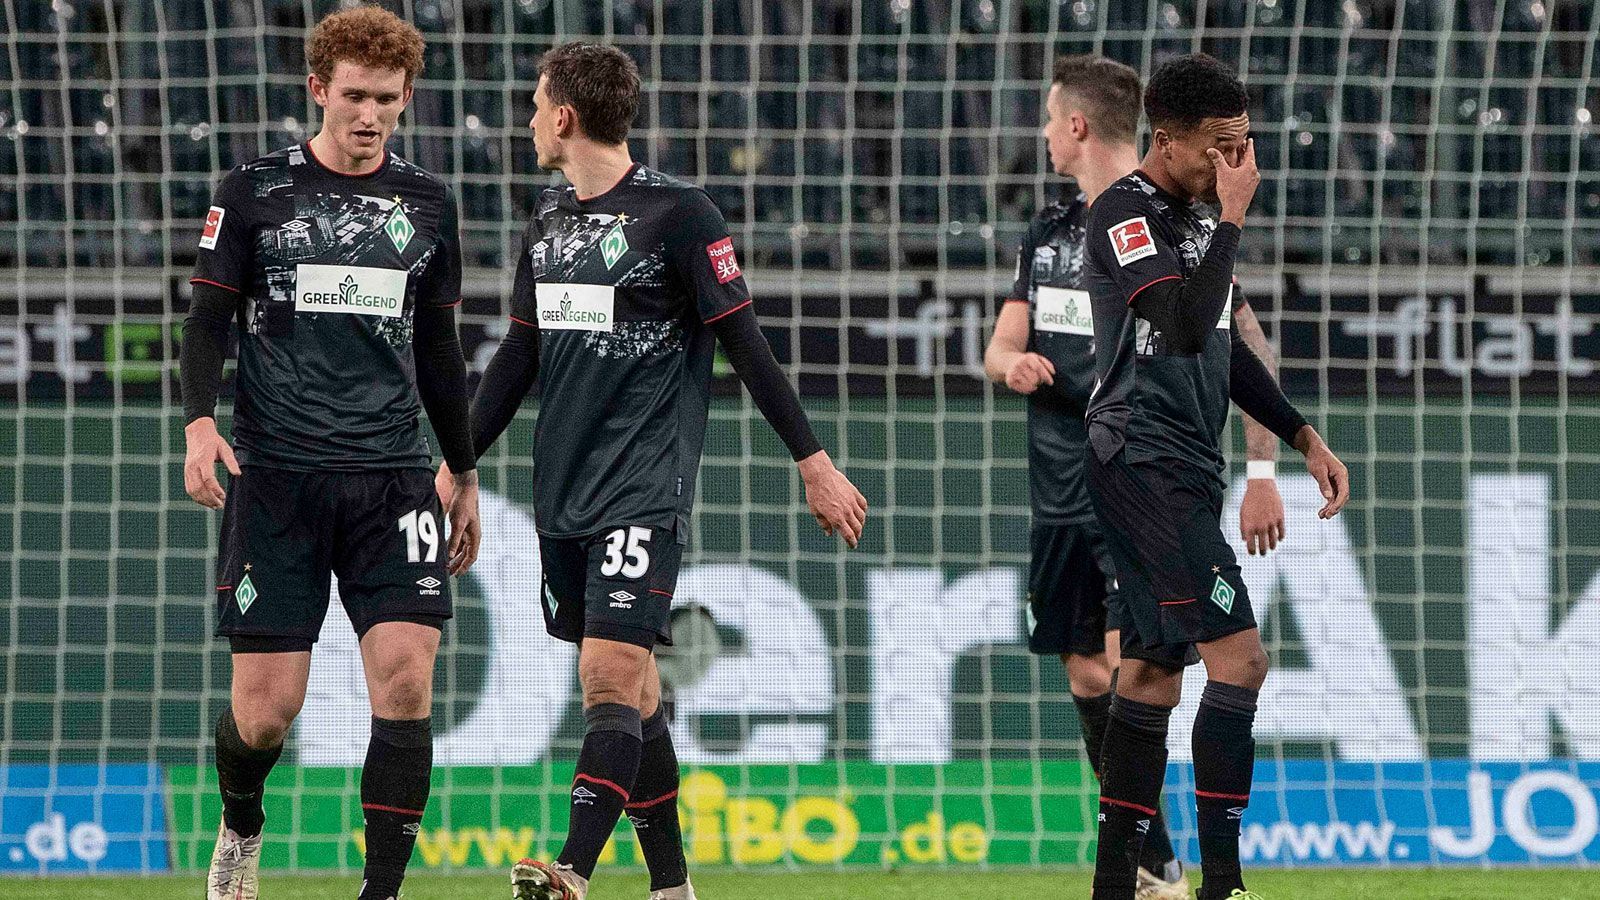 
                <strong>12. Platz: SV Werder Bremen (27 Punkte)</strong><br>
                Anders als in der vergangenen Saison, als der Klassenerhalt erst in den letzten Minuten der Relegation gegen den 1. FC Heidenheim gesichert wurde, ist der Erstligaverbleib für den SV Werder Bremen in der laufenden Runde früher möglich. Acht Punkte Vorsprung auf den Relegationsrang sind ein ordentliches Polster, mit einem Sieg im Nachholspiel gegen Bielefeld (10. März 2021, ab 18:30 Uhr im Liveticker auf ran.de) könnte dieser sogar auf elf Punkte anwachsen. Allerdings warten in den verbleibenden Spielen noch schwierige Aufgaben auf die Elf von Cheftrainer Florian Kohfeldt - neben dem FC Bayern München und RB Leipzig stehen weiterhin Partien gegen den VfL Wolfsburg, Bayer Leverkusen und Borussia Dortmund an. Abstiegswahrscheinlichkeit: 10%
              